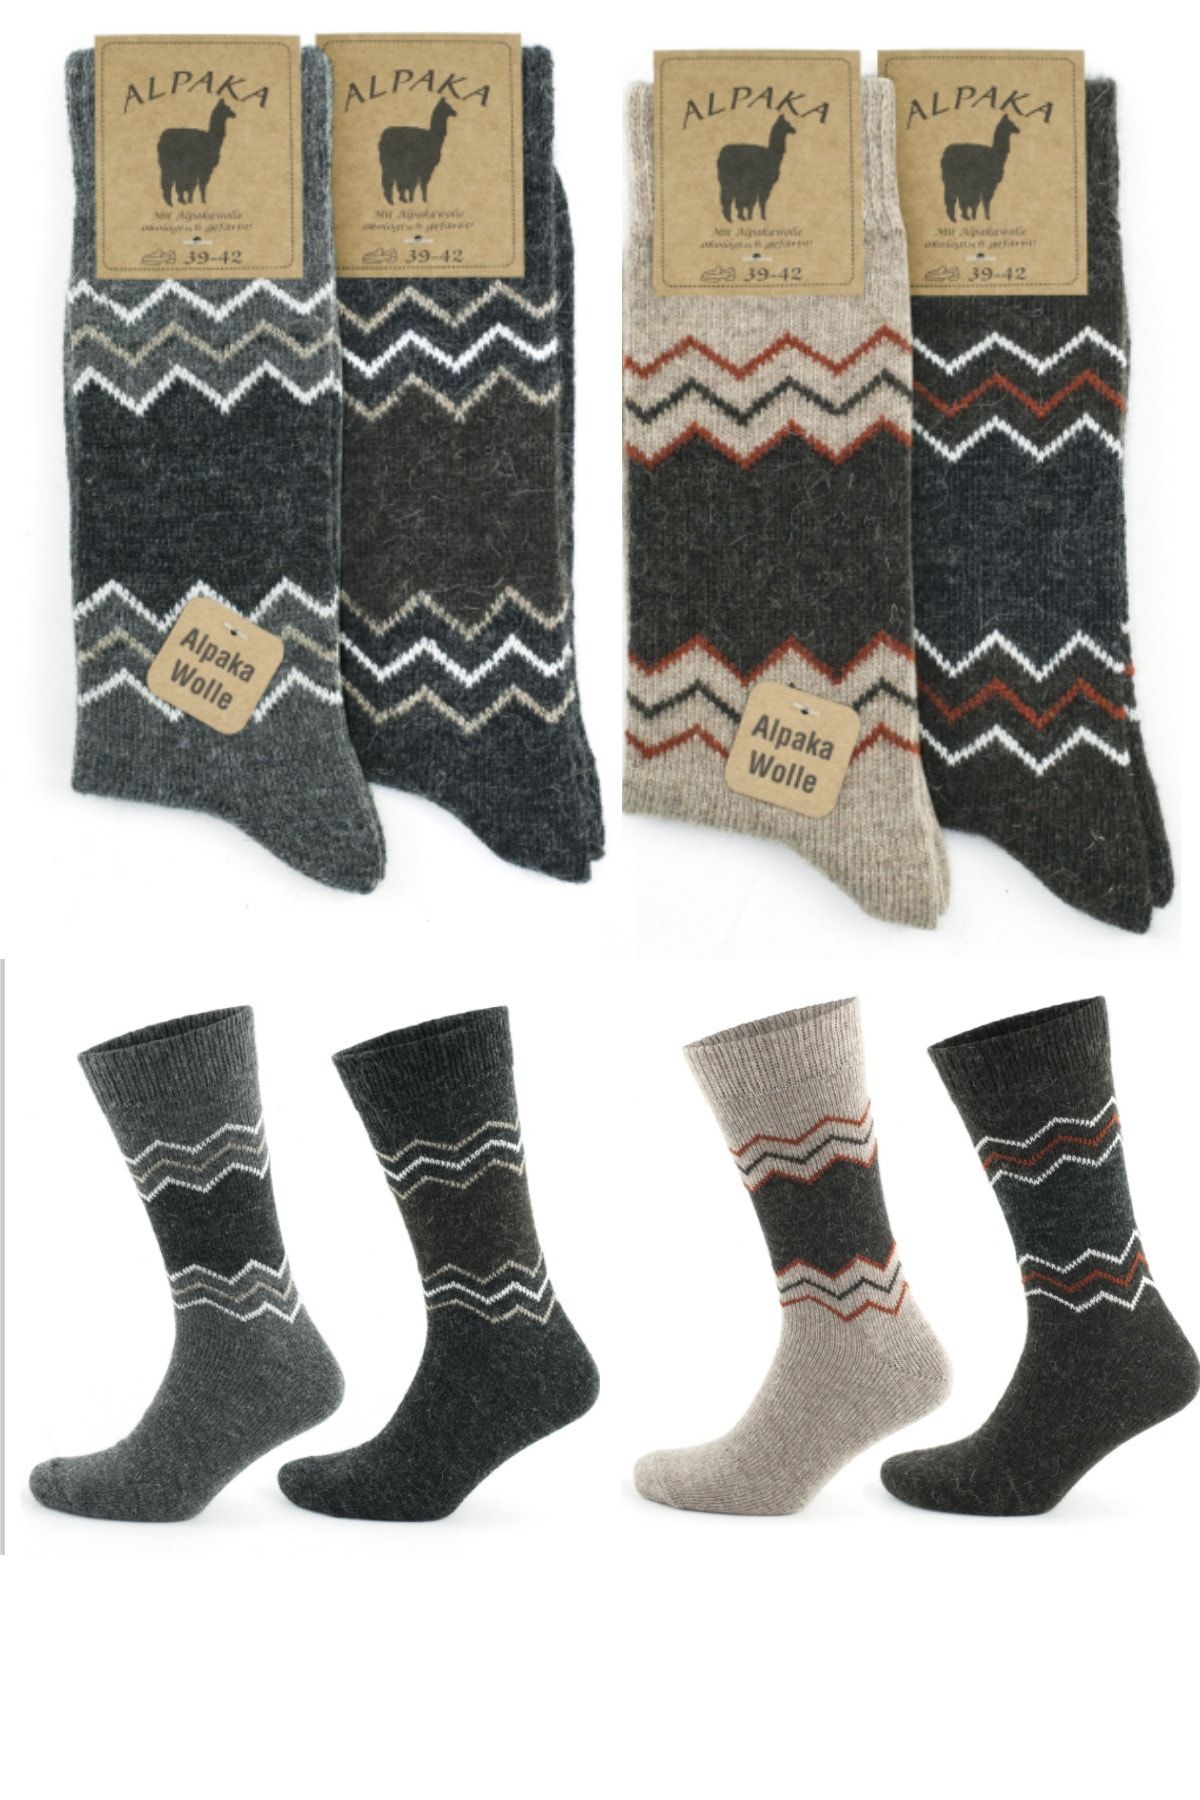 socksbox Kışlık Alpaka Doğal Yün Termal Zigzag Desenli Çorap